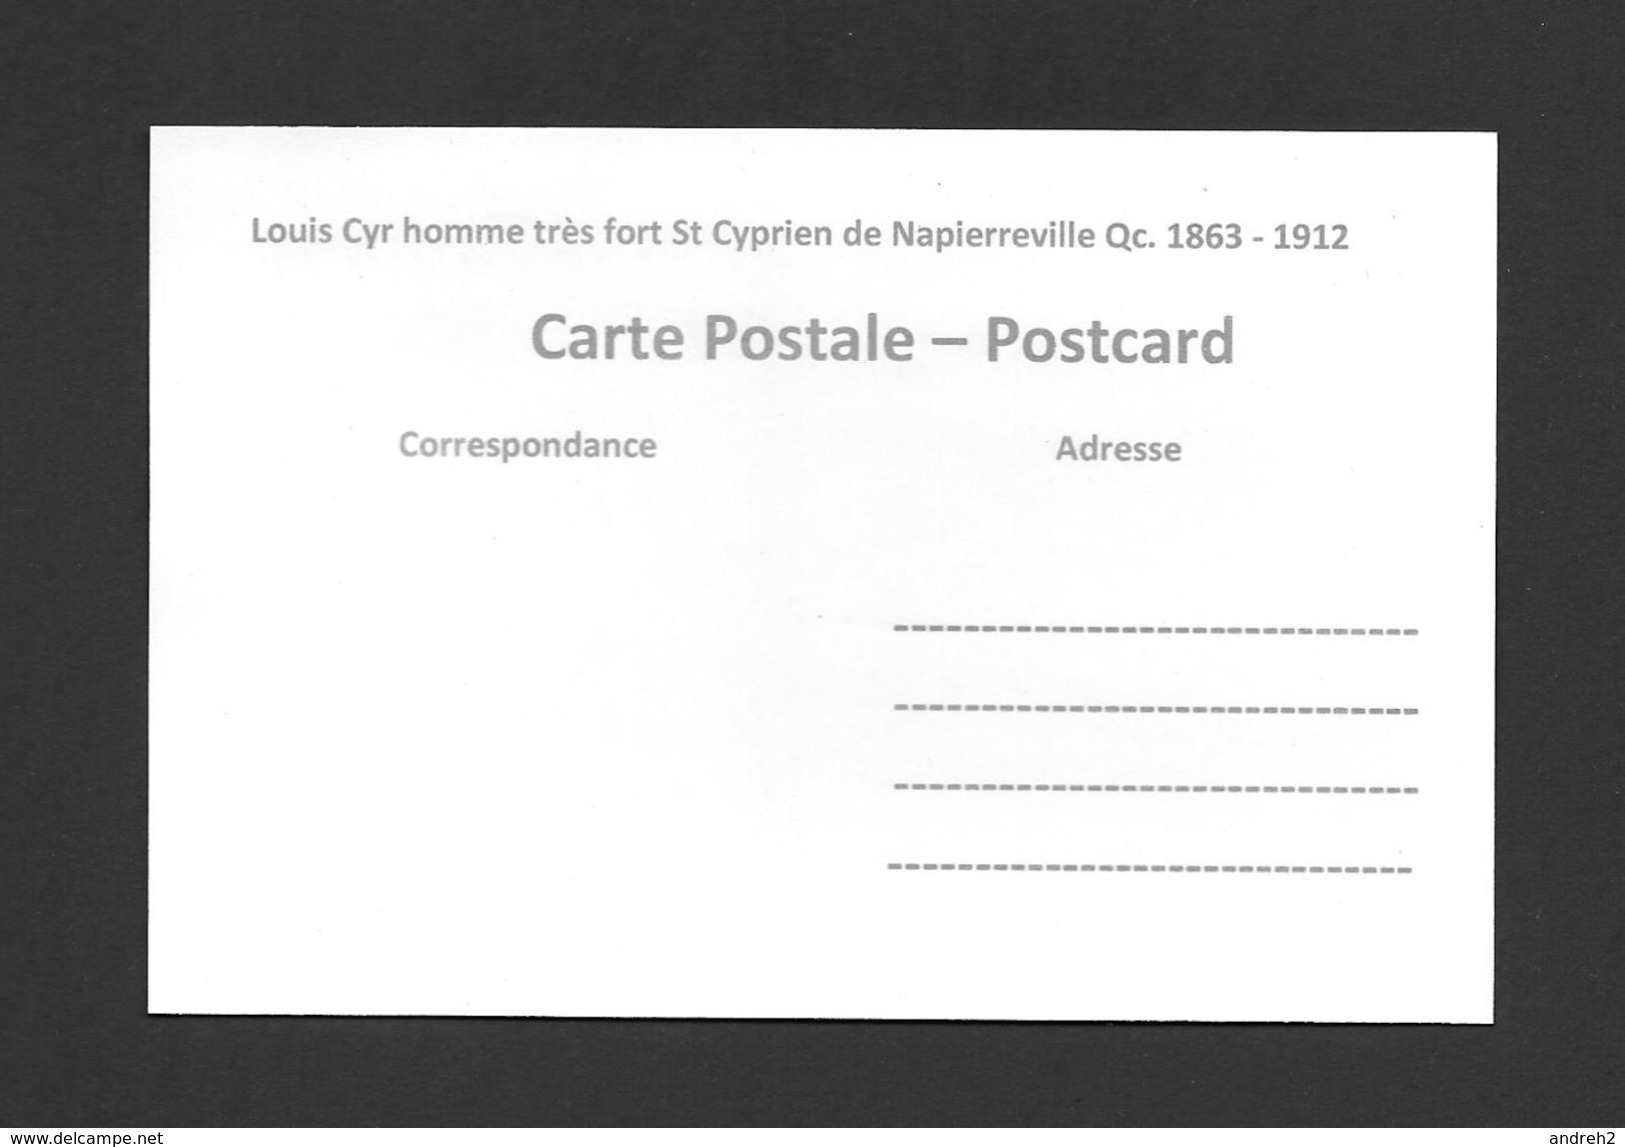 SPORTS - HALTÉROPHILIE - LOUIS CYR - ST CYPRIEN DE NAPIERVILLE QC. - (1863 - 1912) - HOMME FORT - Haltérophilie